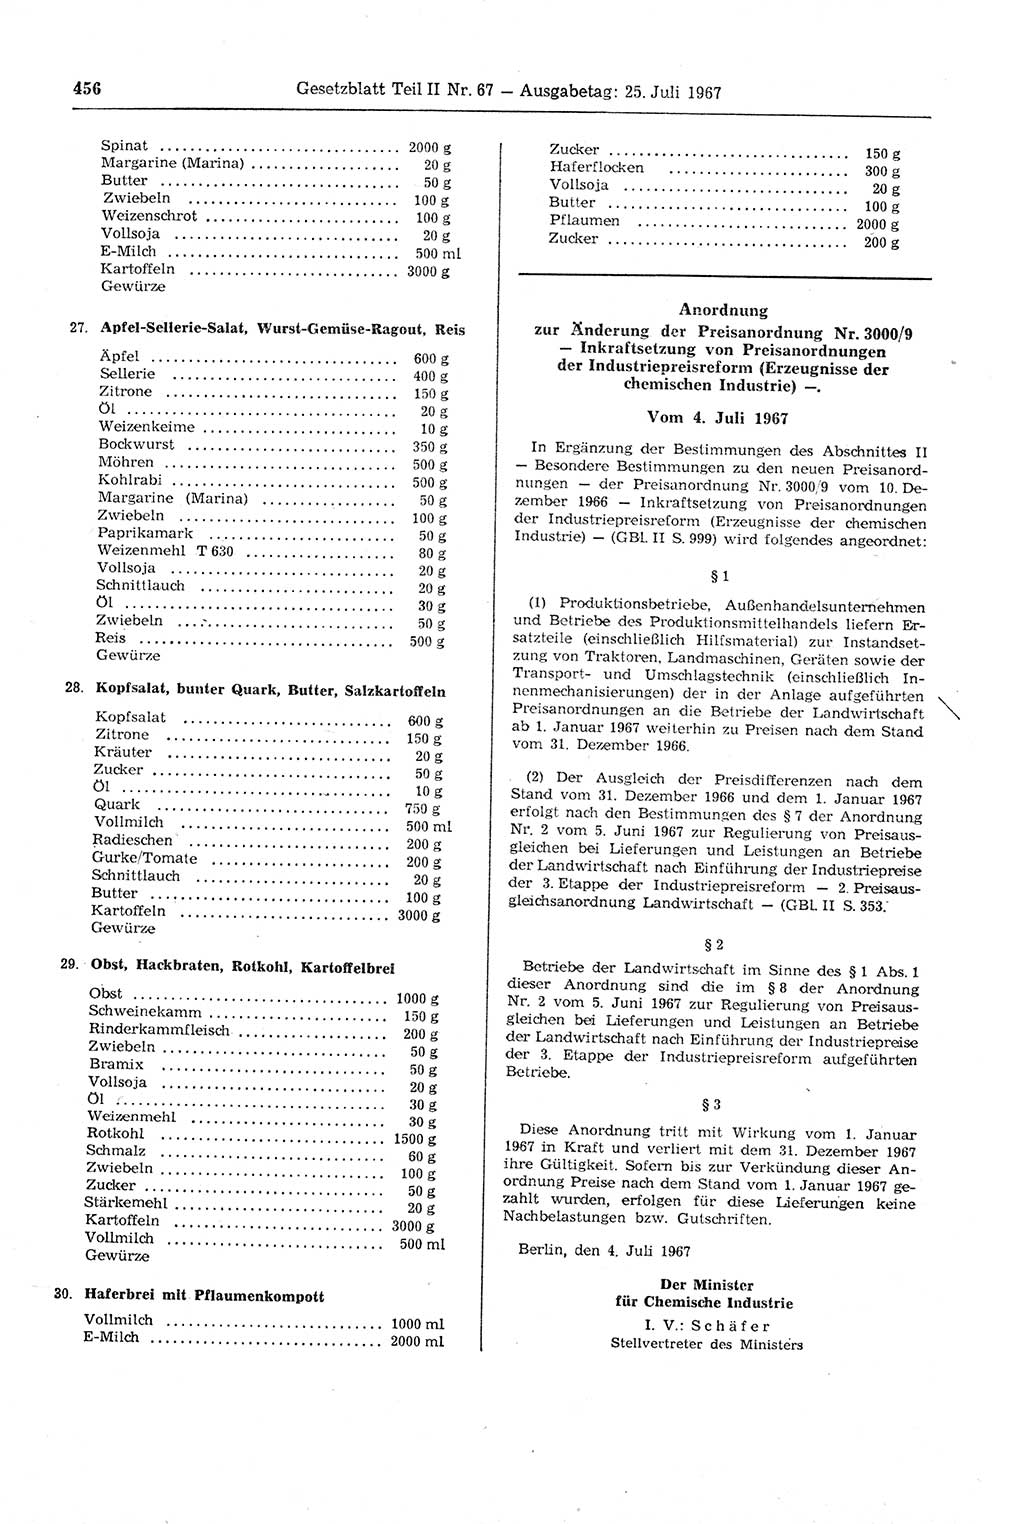 Gesetzblatt (GBl.) der Deutschen Demokratischen Republik (DDR) Teil ⅠⅠ 1967, Seite 456 (GBl. DDR ⅠⅠ 1967, S. 456)